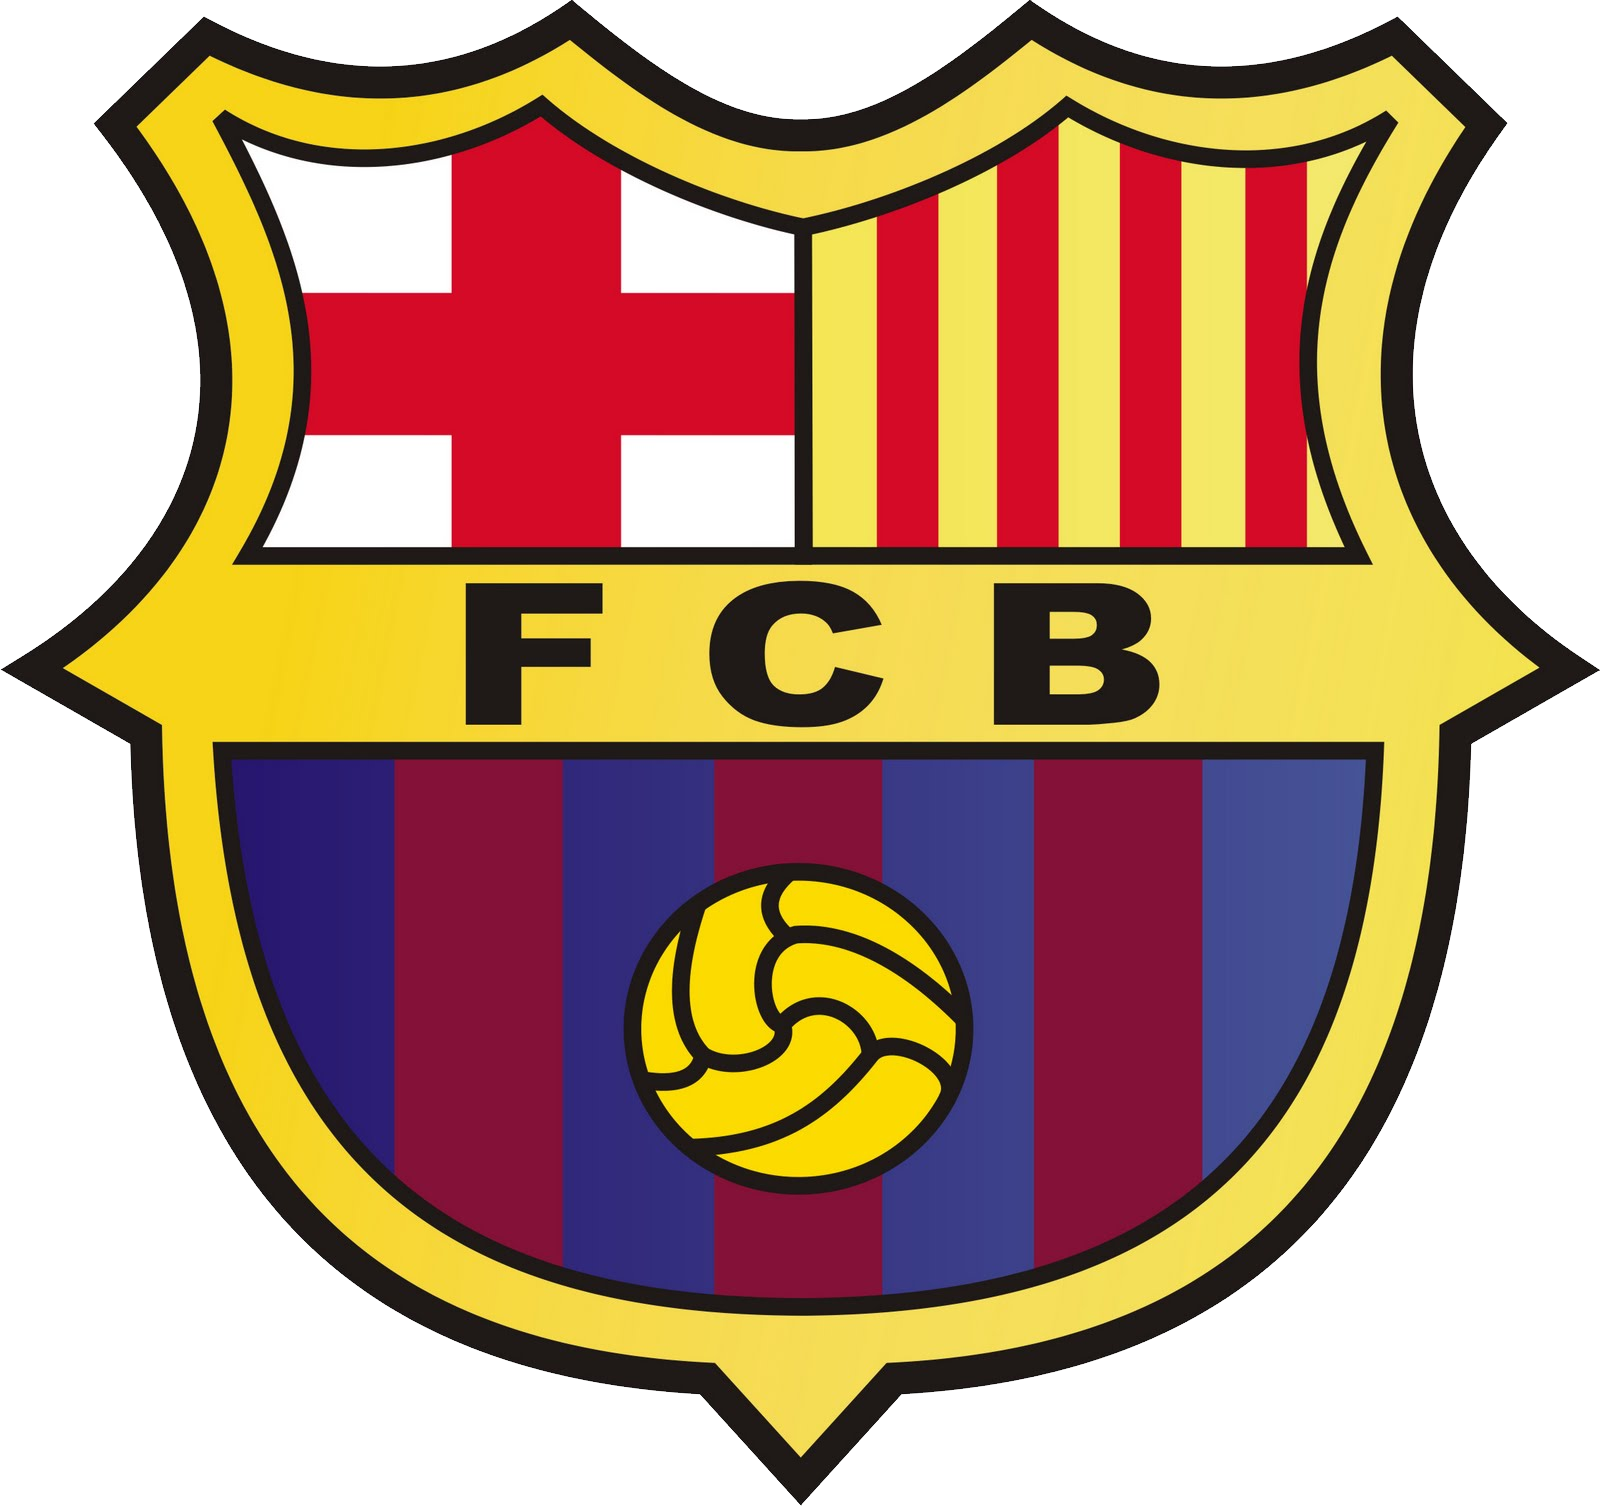 巴塞罗那足球俱乐部标志